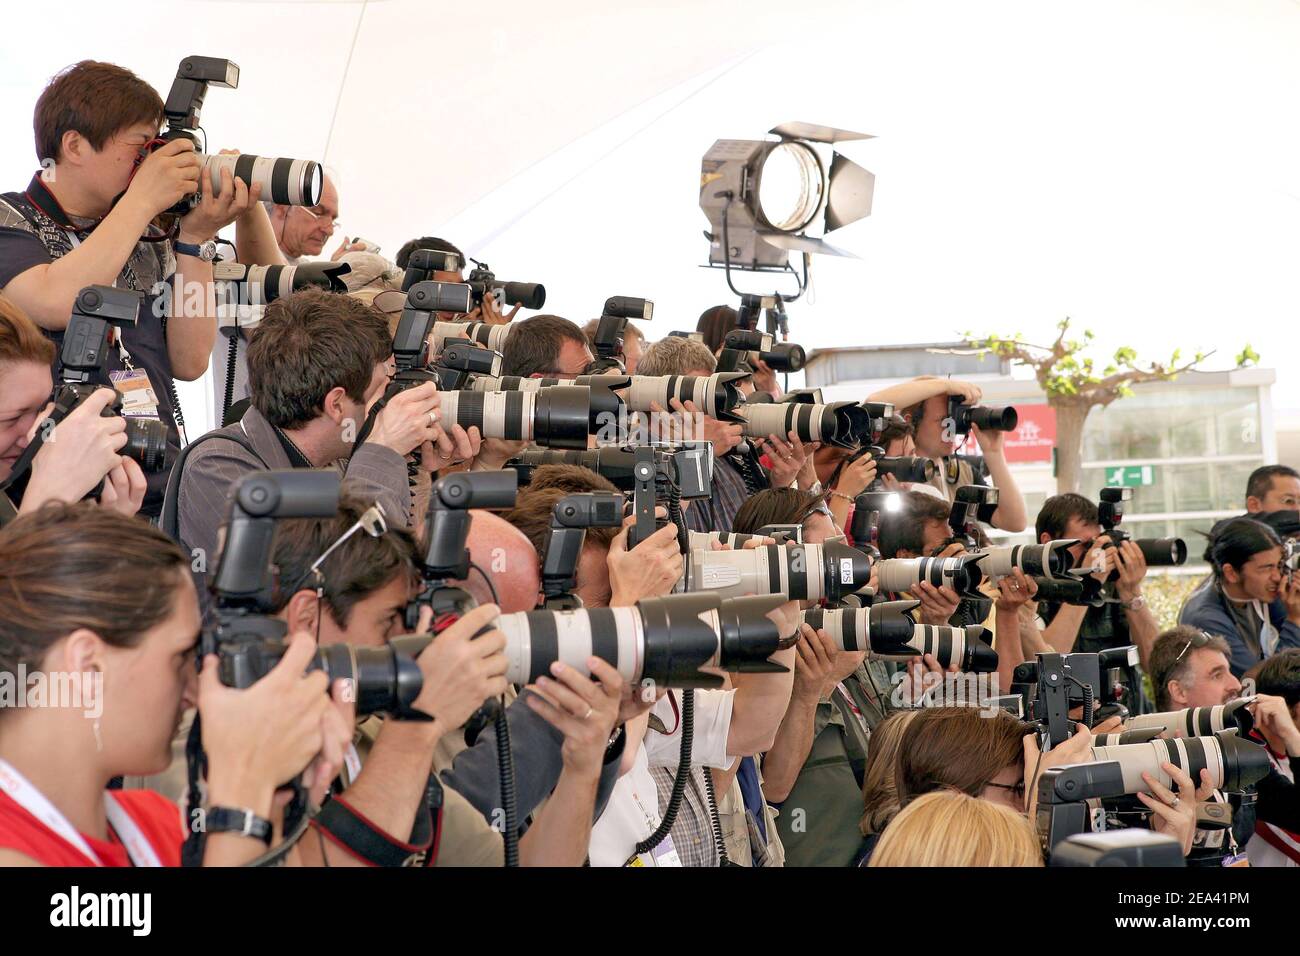 Fotografi durante la fotocellula per il film Masahiro Kobayashi 'Bashing' al 58° Festival di Cannes, a Cannes, Francia meridionale, il 12 maggio 2005. Foto di Hahn-Nebinger-Klein/ABACA Foto Stock